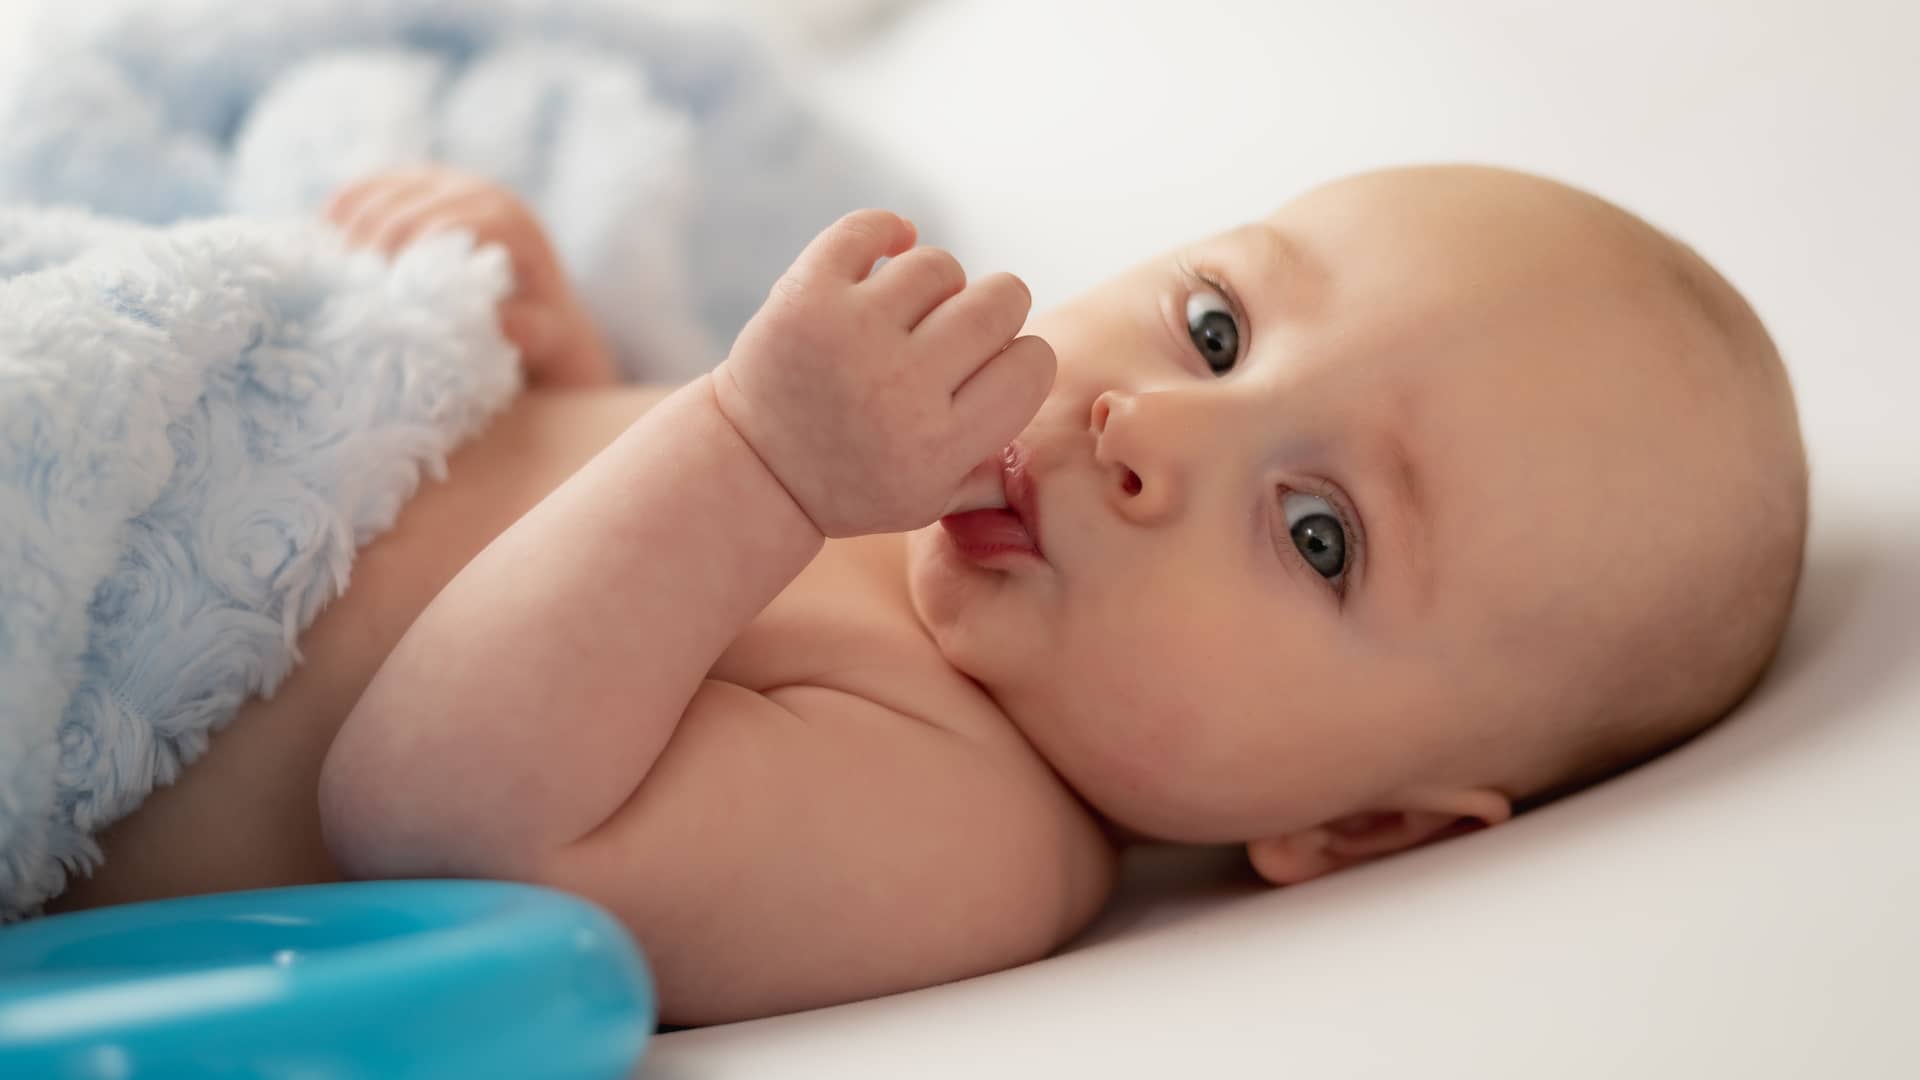 un bebe que padece candidiasis oral chupandose el dedo